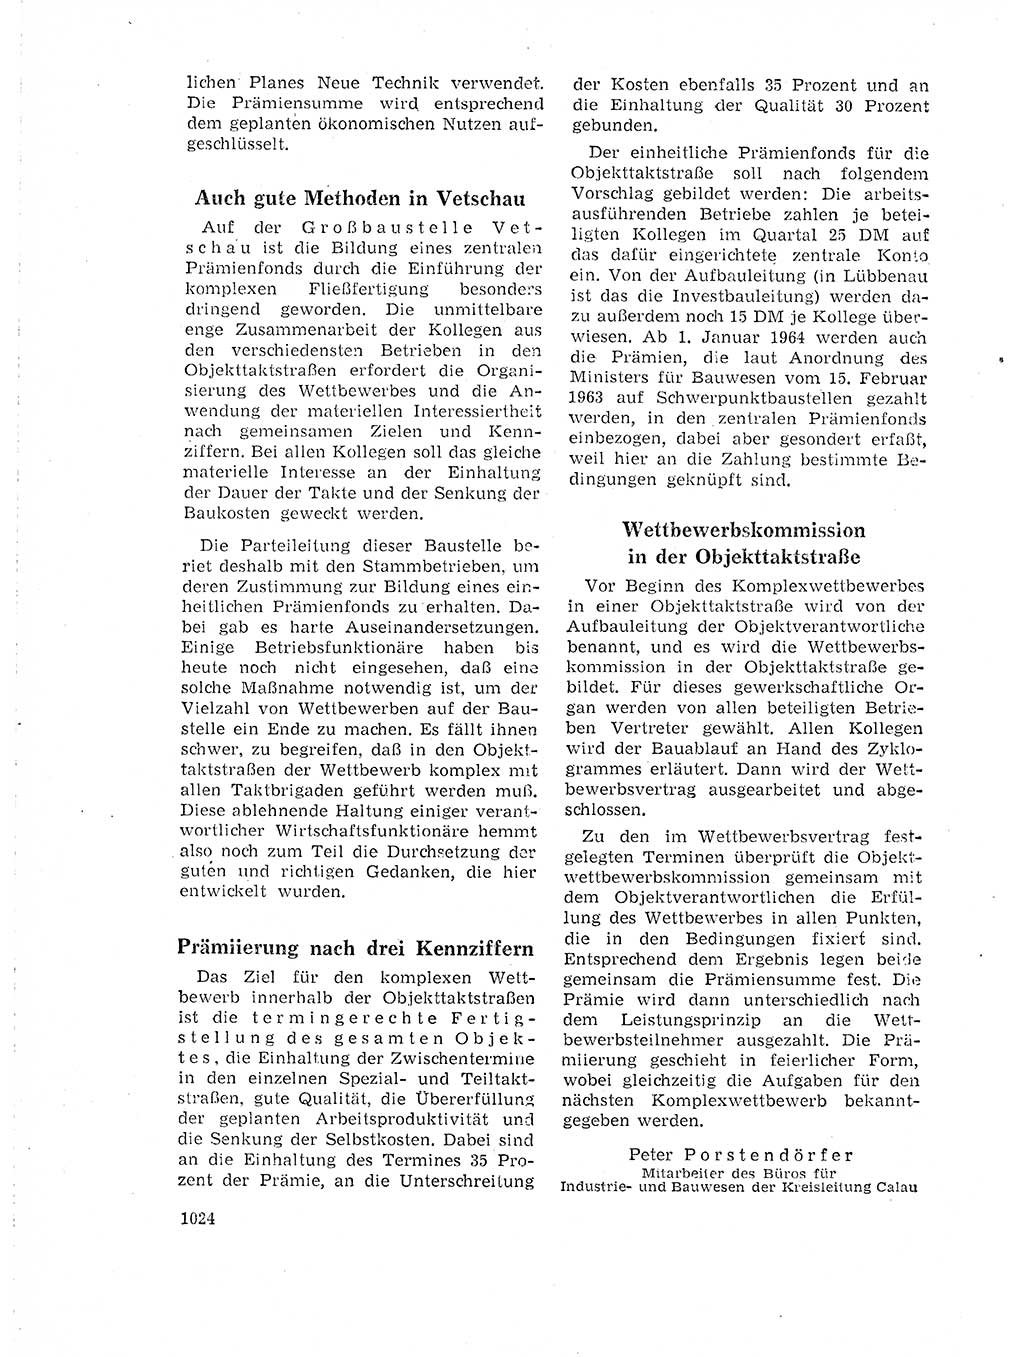 Neuer Weg (NW), Organ des Zentralkomitees (ZK) der SED (Sozialistische Einheitspartei Deutschlands) für Fragen des Parteilebens, 18. Jahrgang [Deutsche Demokratische Republik (DDR)] 1963, Seite 1024 (NW ZK SED DDR 1963, S. 1024)